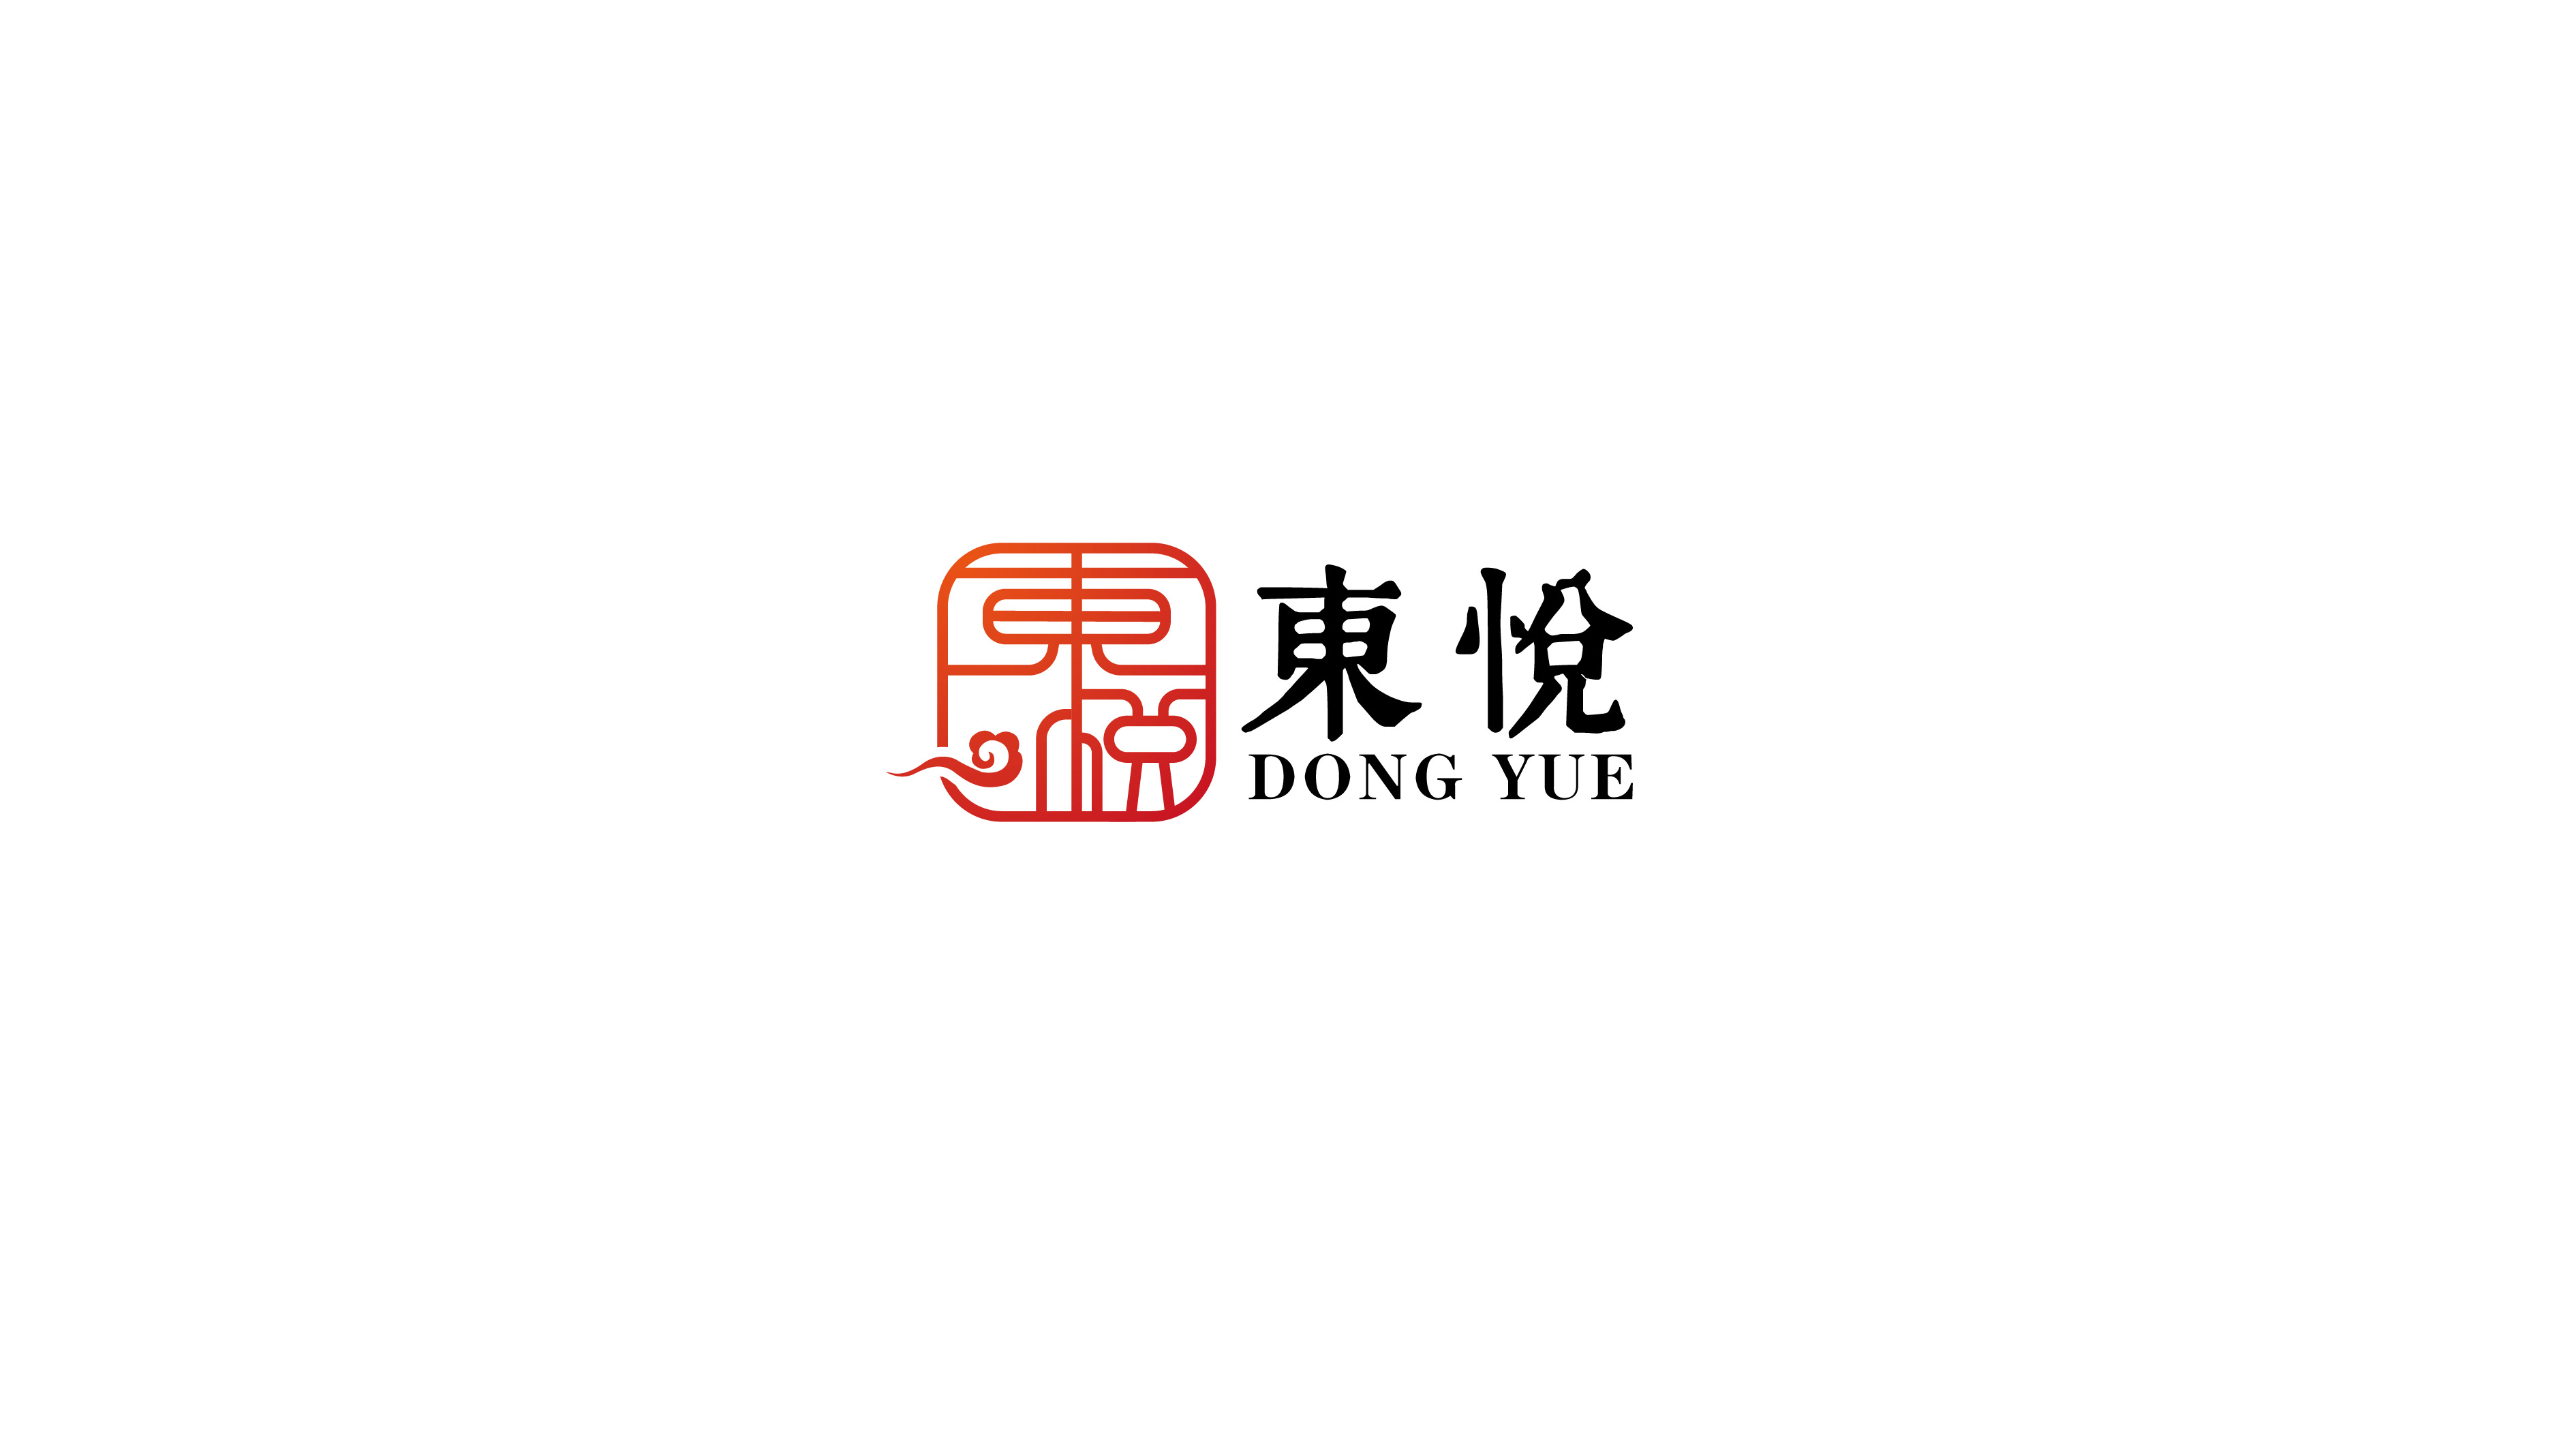 中高端煙酒商店logo設計